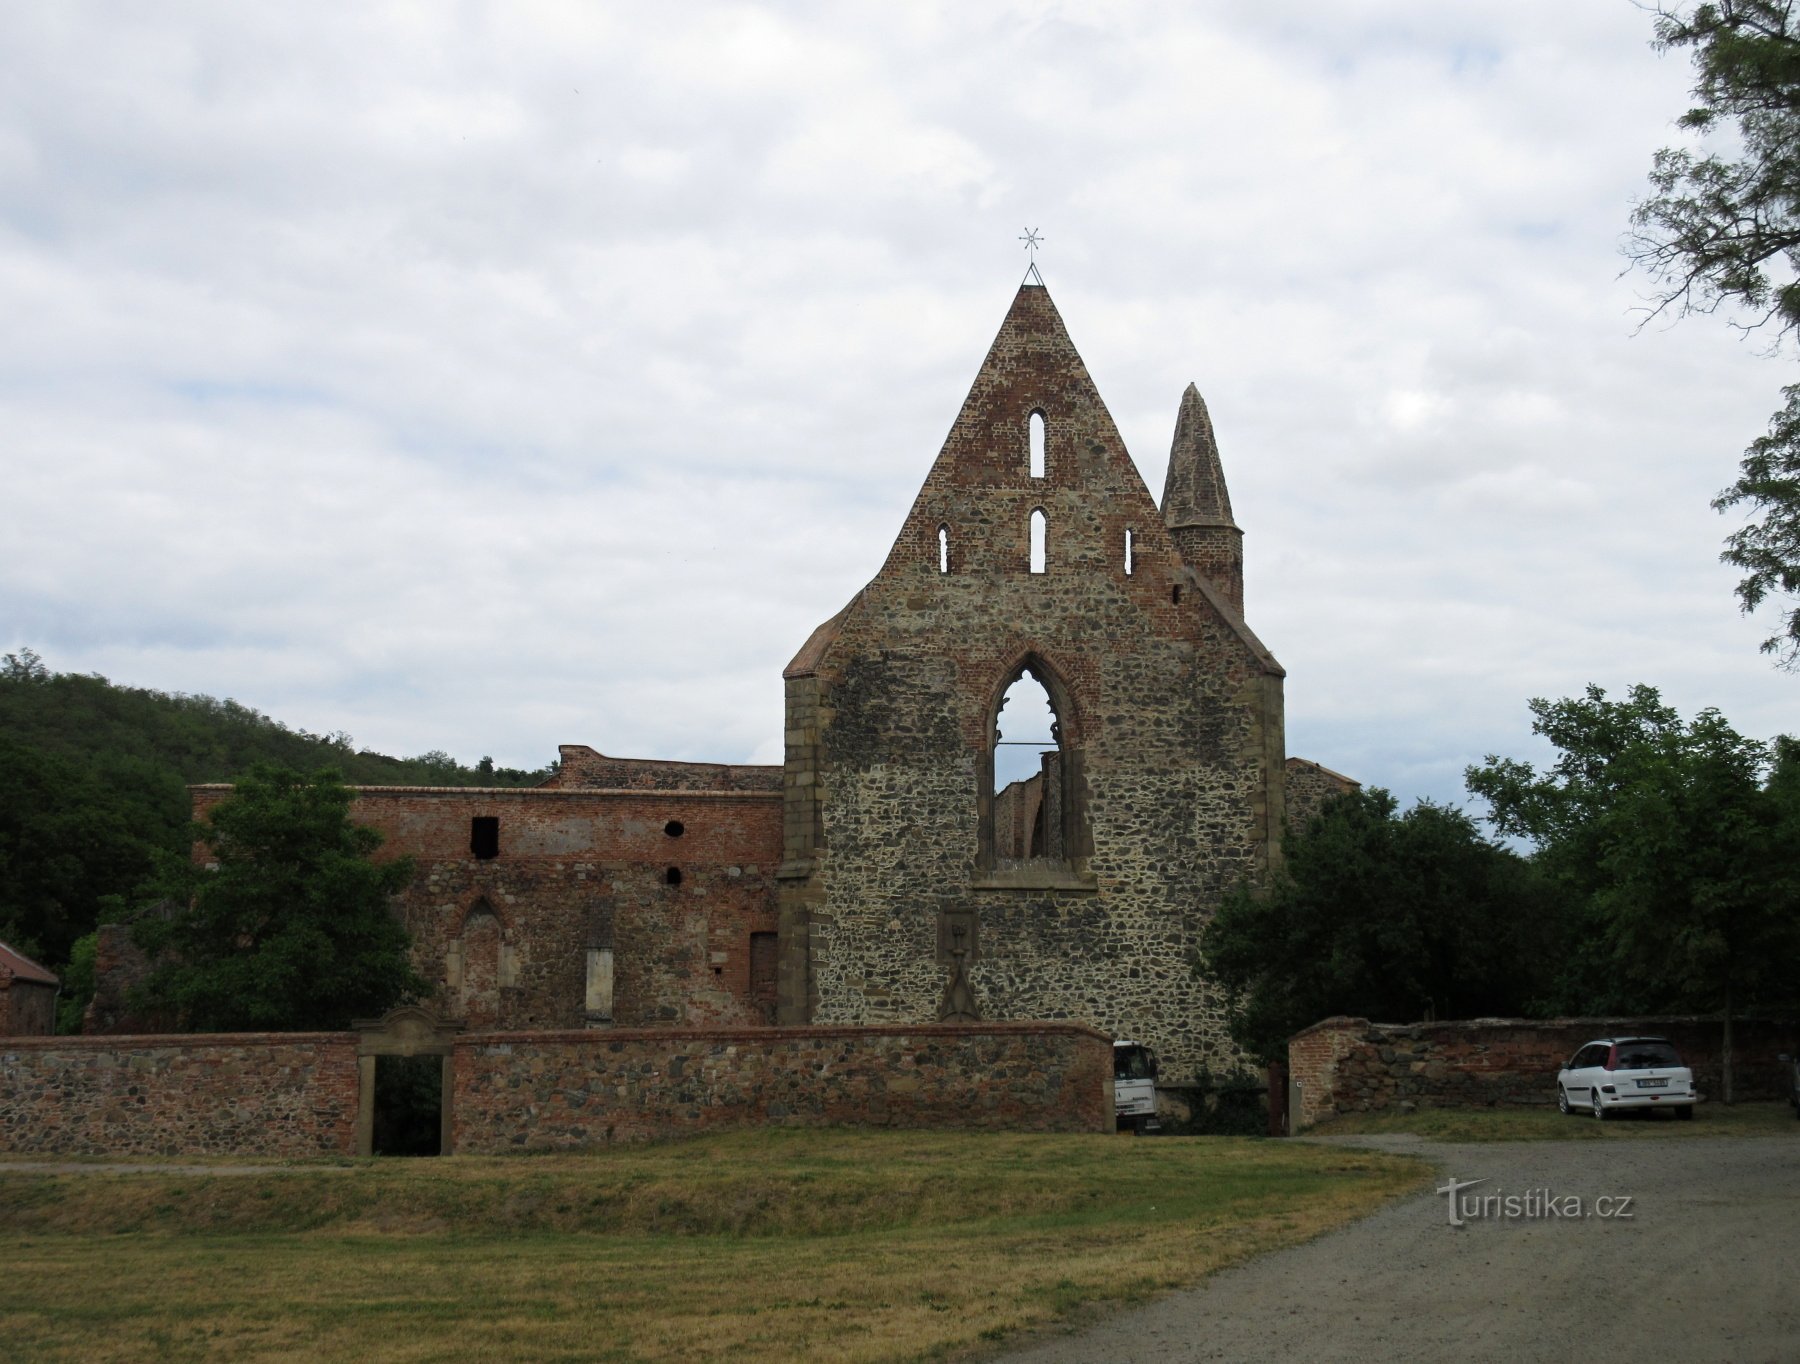 Dolní Kounice – história, ruínas do mosteiro, castelo, monumentos judaicos